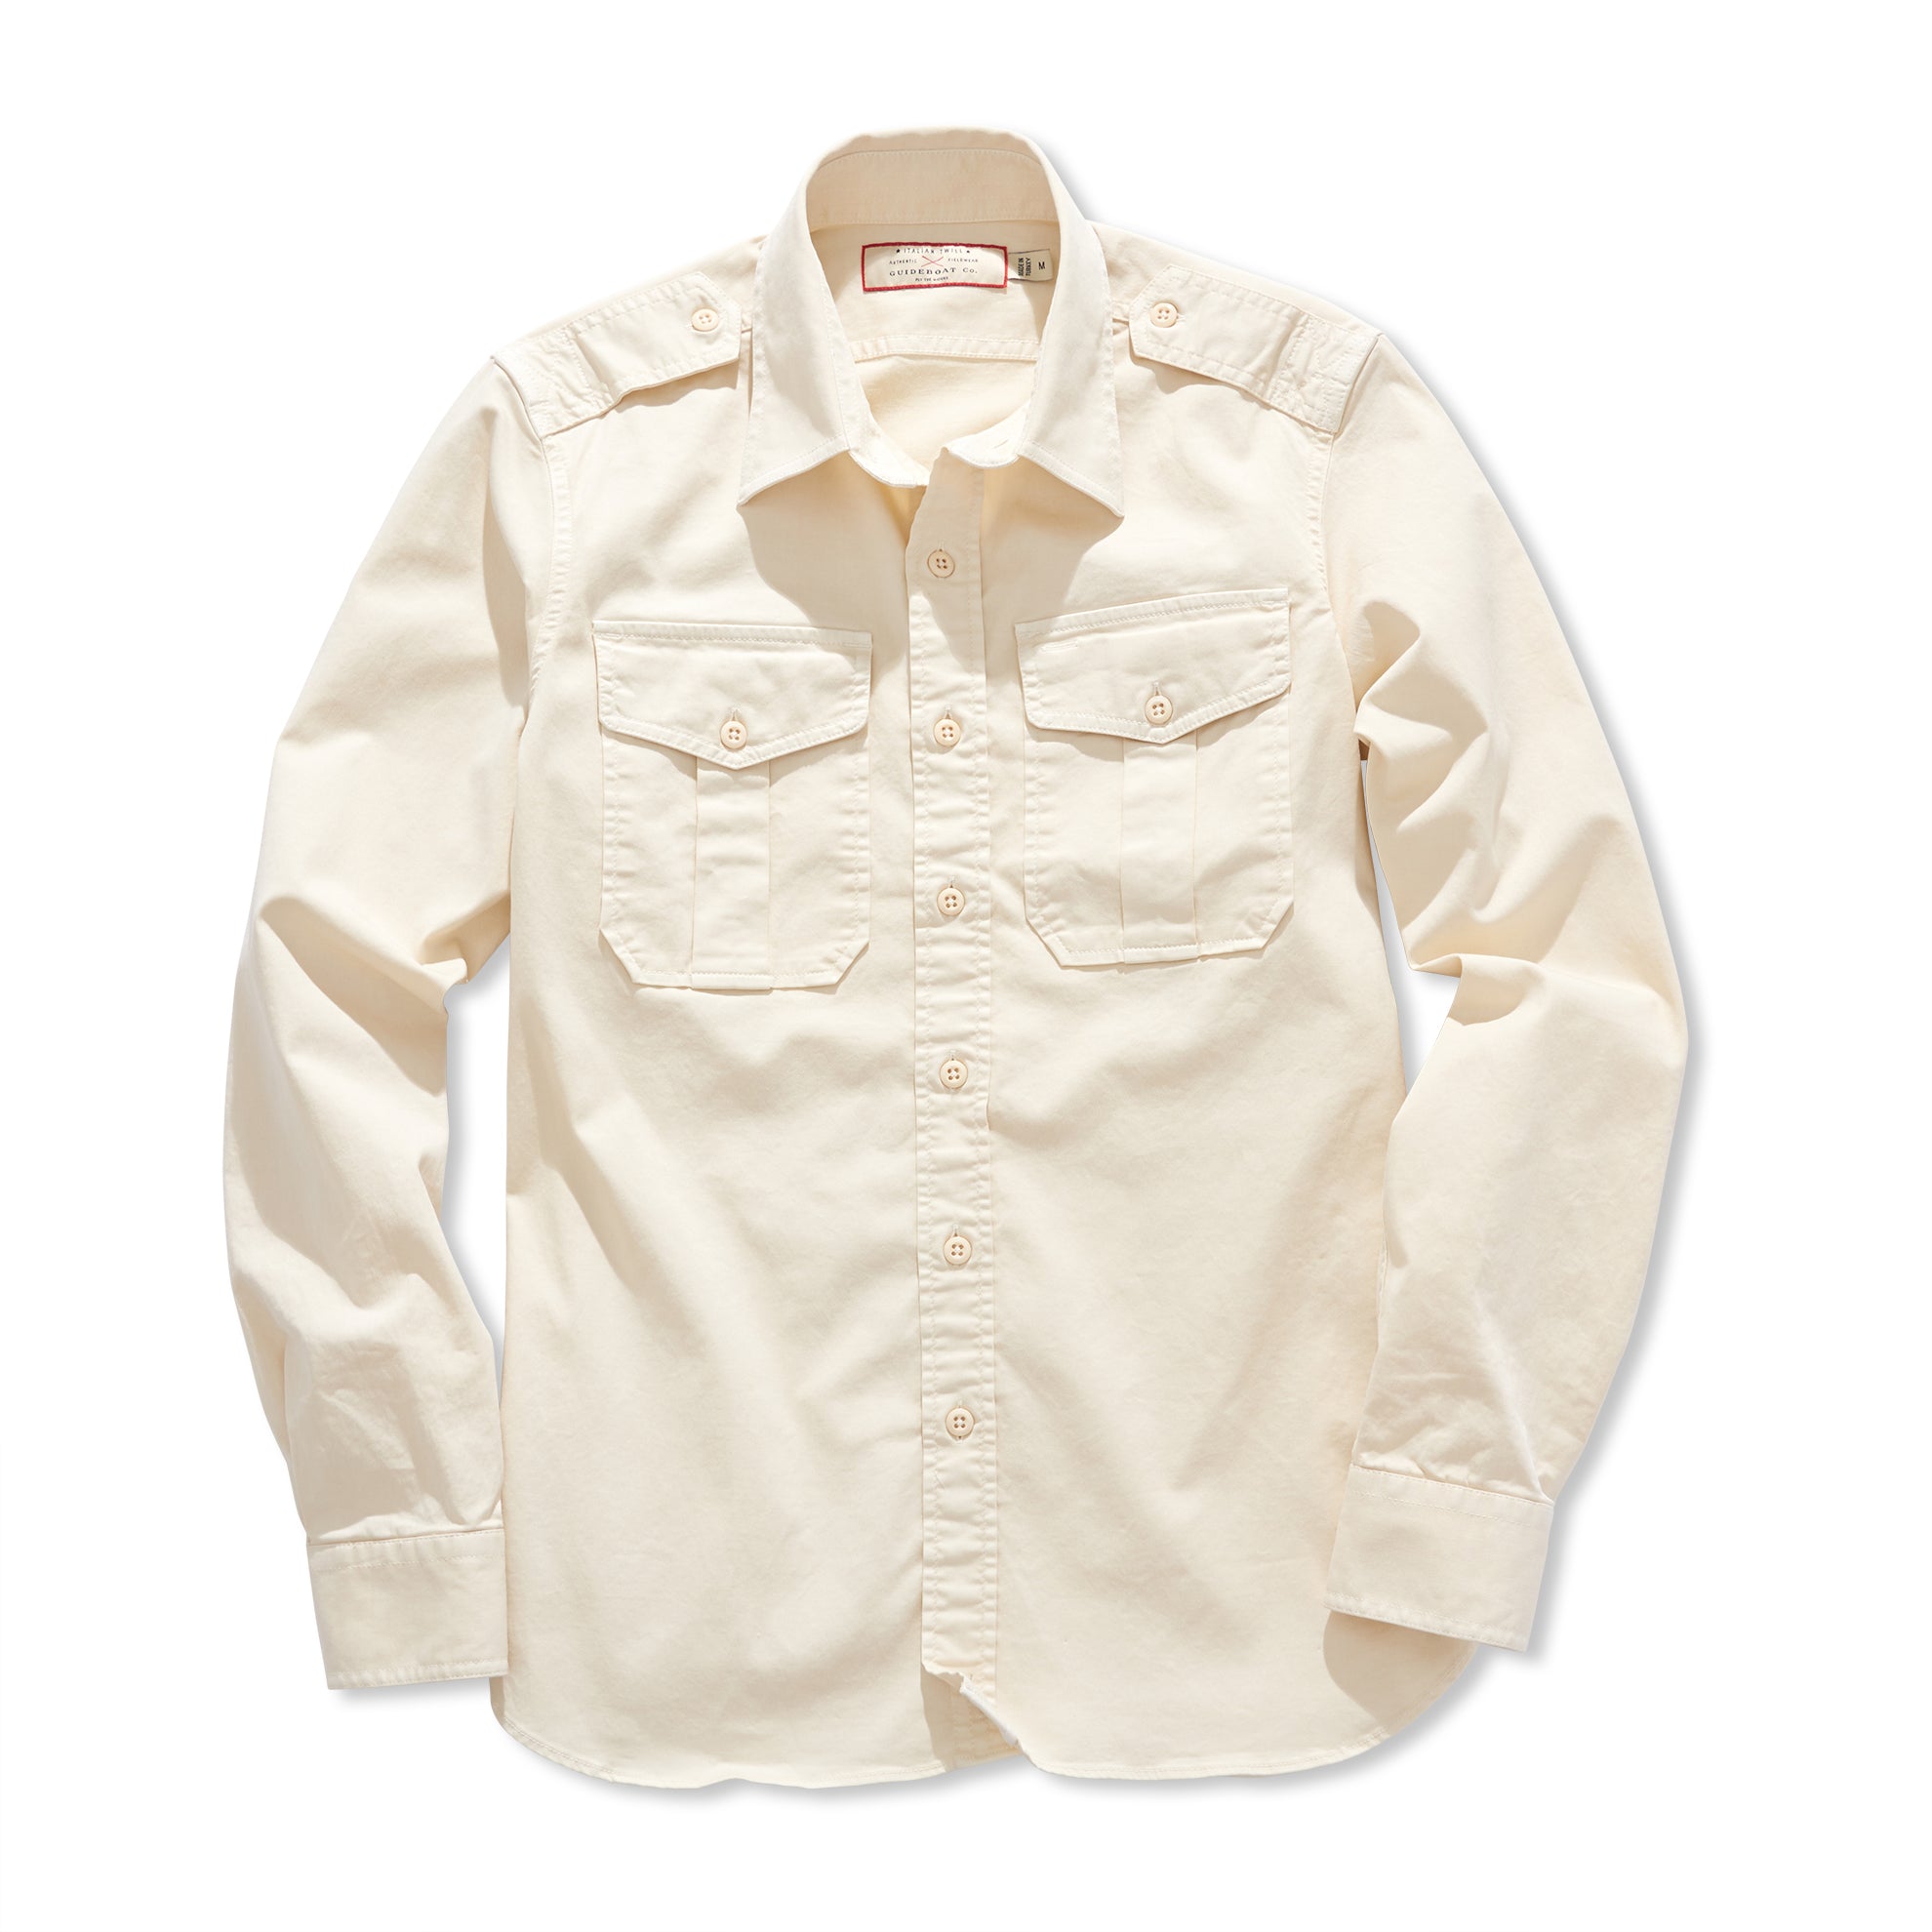 Officer & Gentleman Field Shirt – The J. Peterman Company